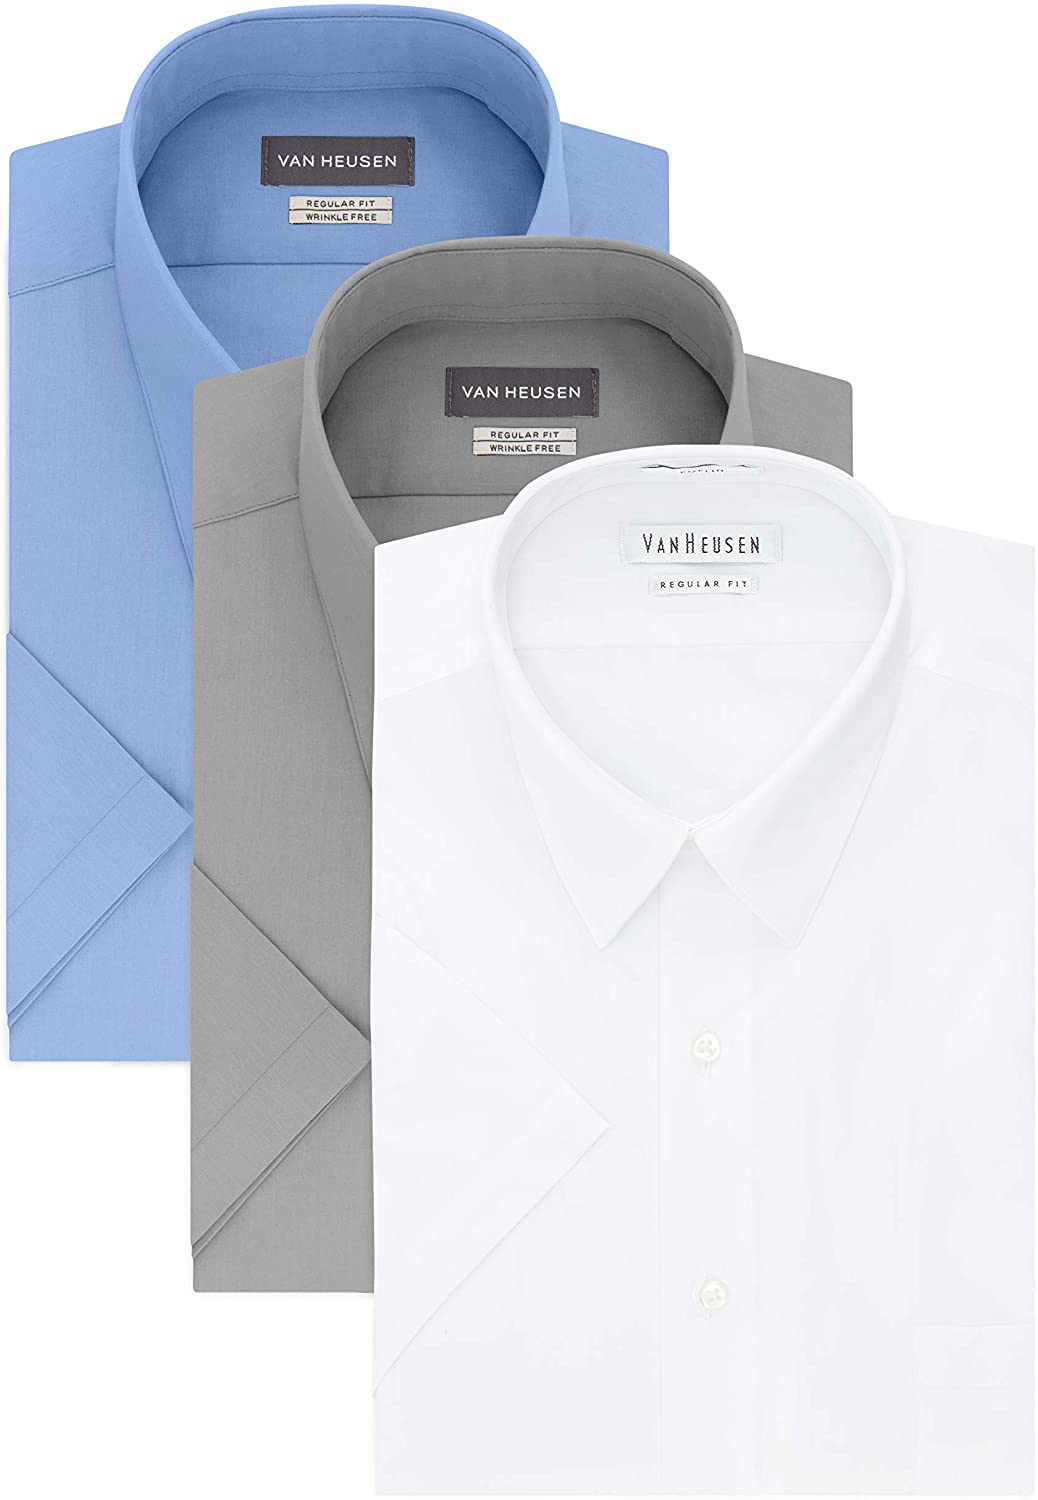 Van Heusen Men's Short Sleeve Dress Shirt Regular Fit Poplin Solid | eBay